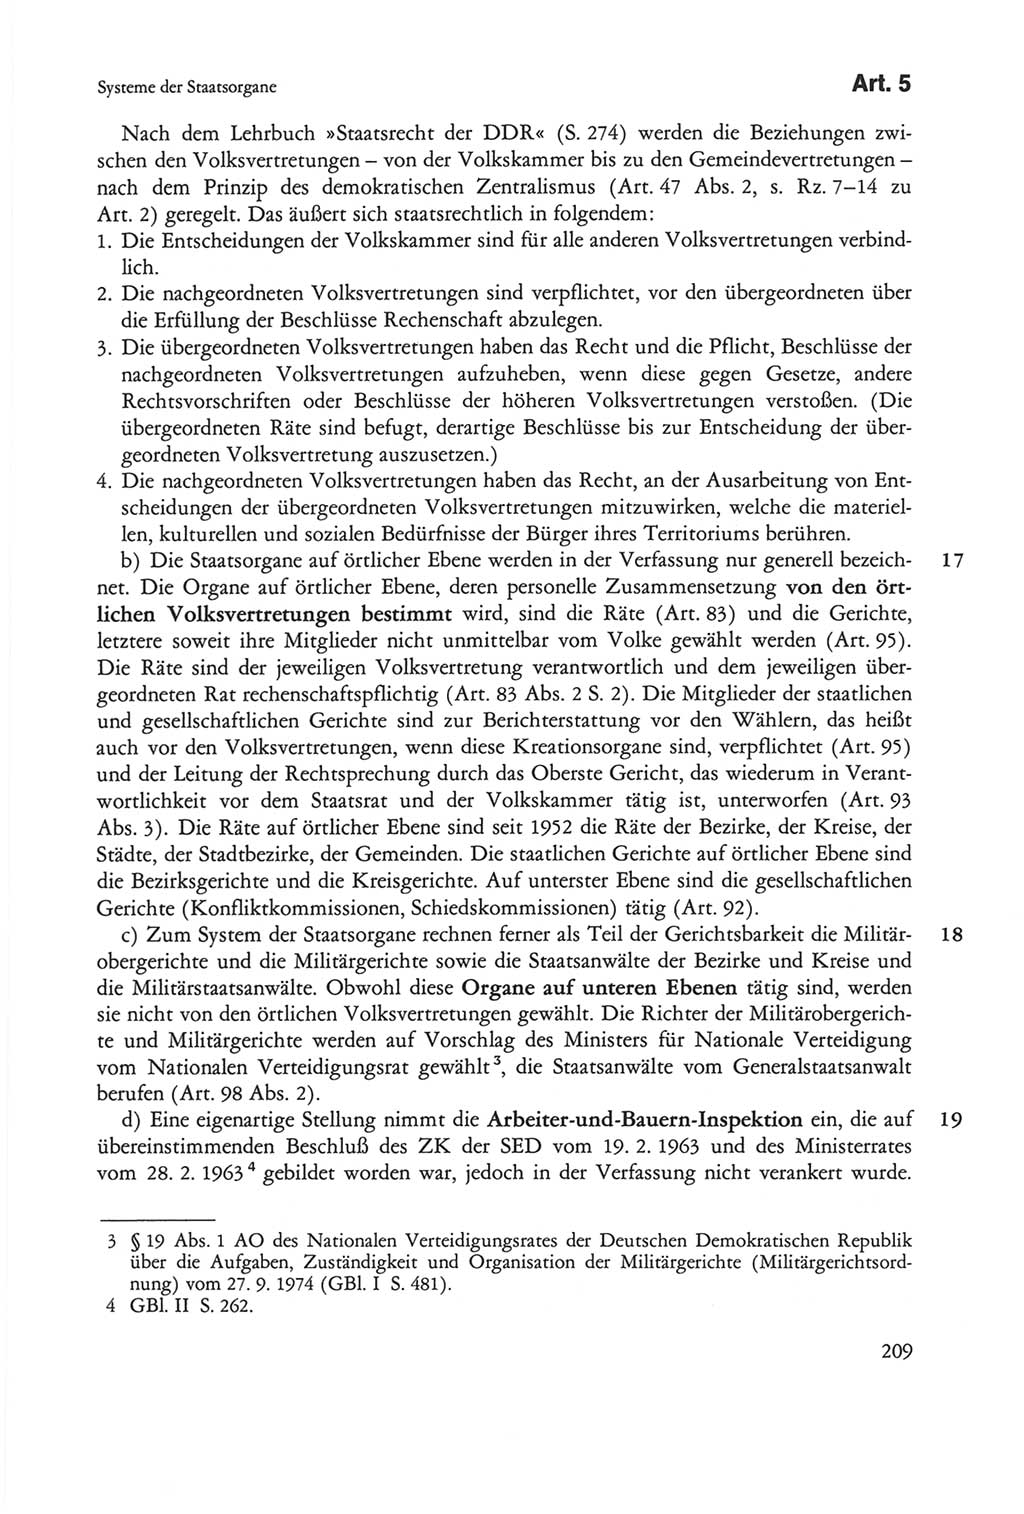 Die sozialistische Verfassung der Deutschen Demokratischen Republik (DDR), Kommentar mit einem Nachtrag 1997, Seite 209 (Soz. Verf. DDR Komm. Nachtr. 1997, S. 209)